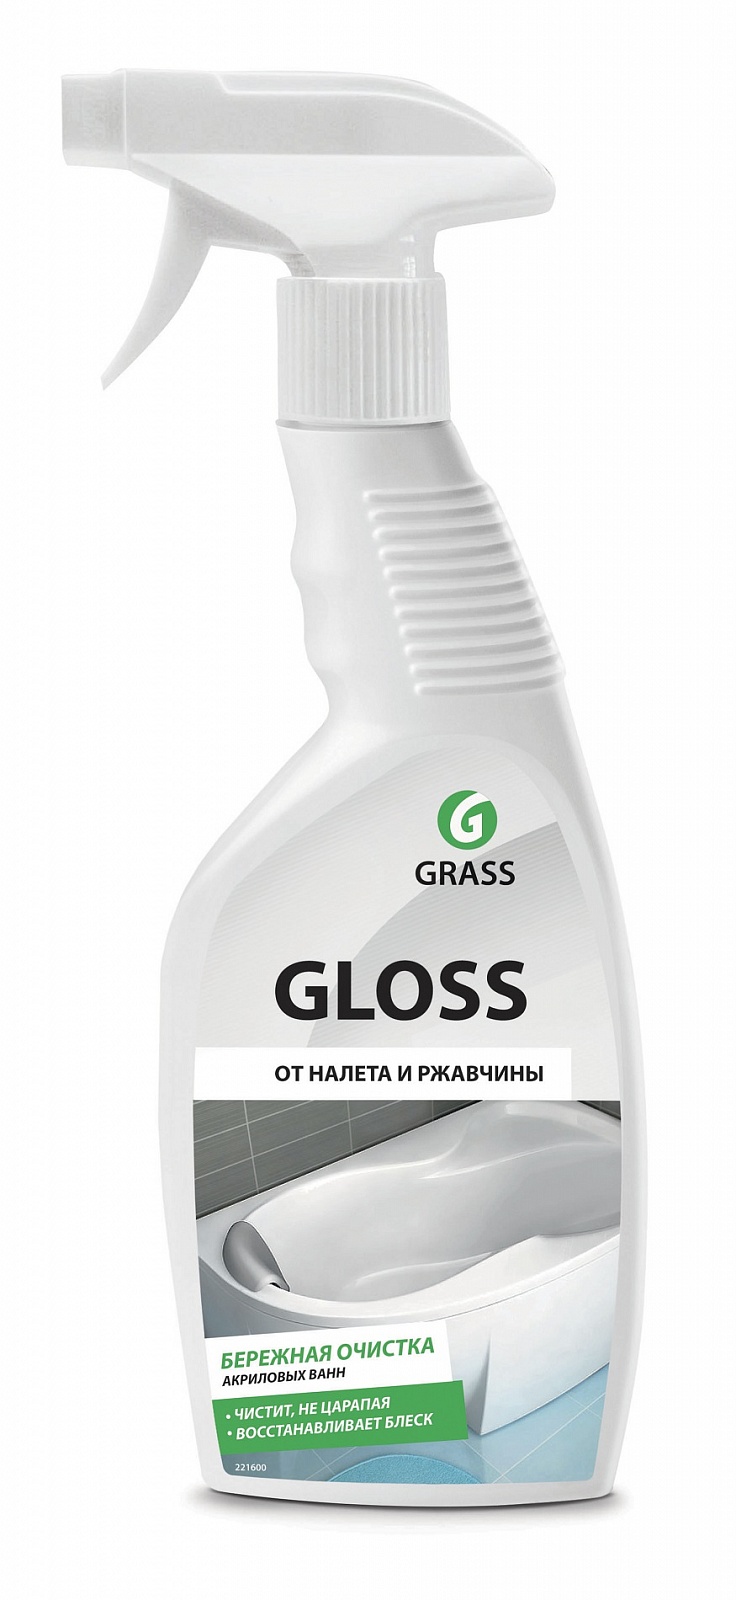 Grass Gloss 600      